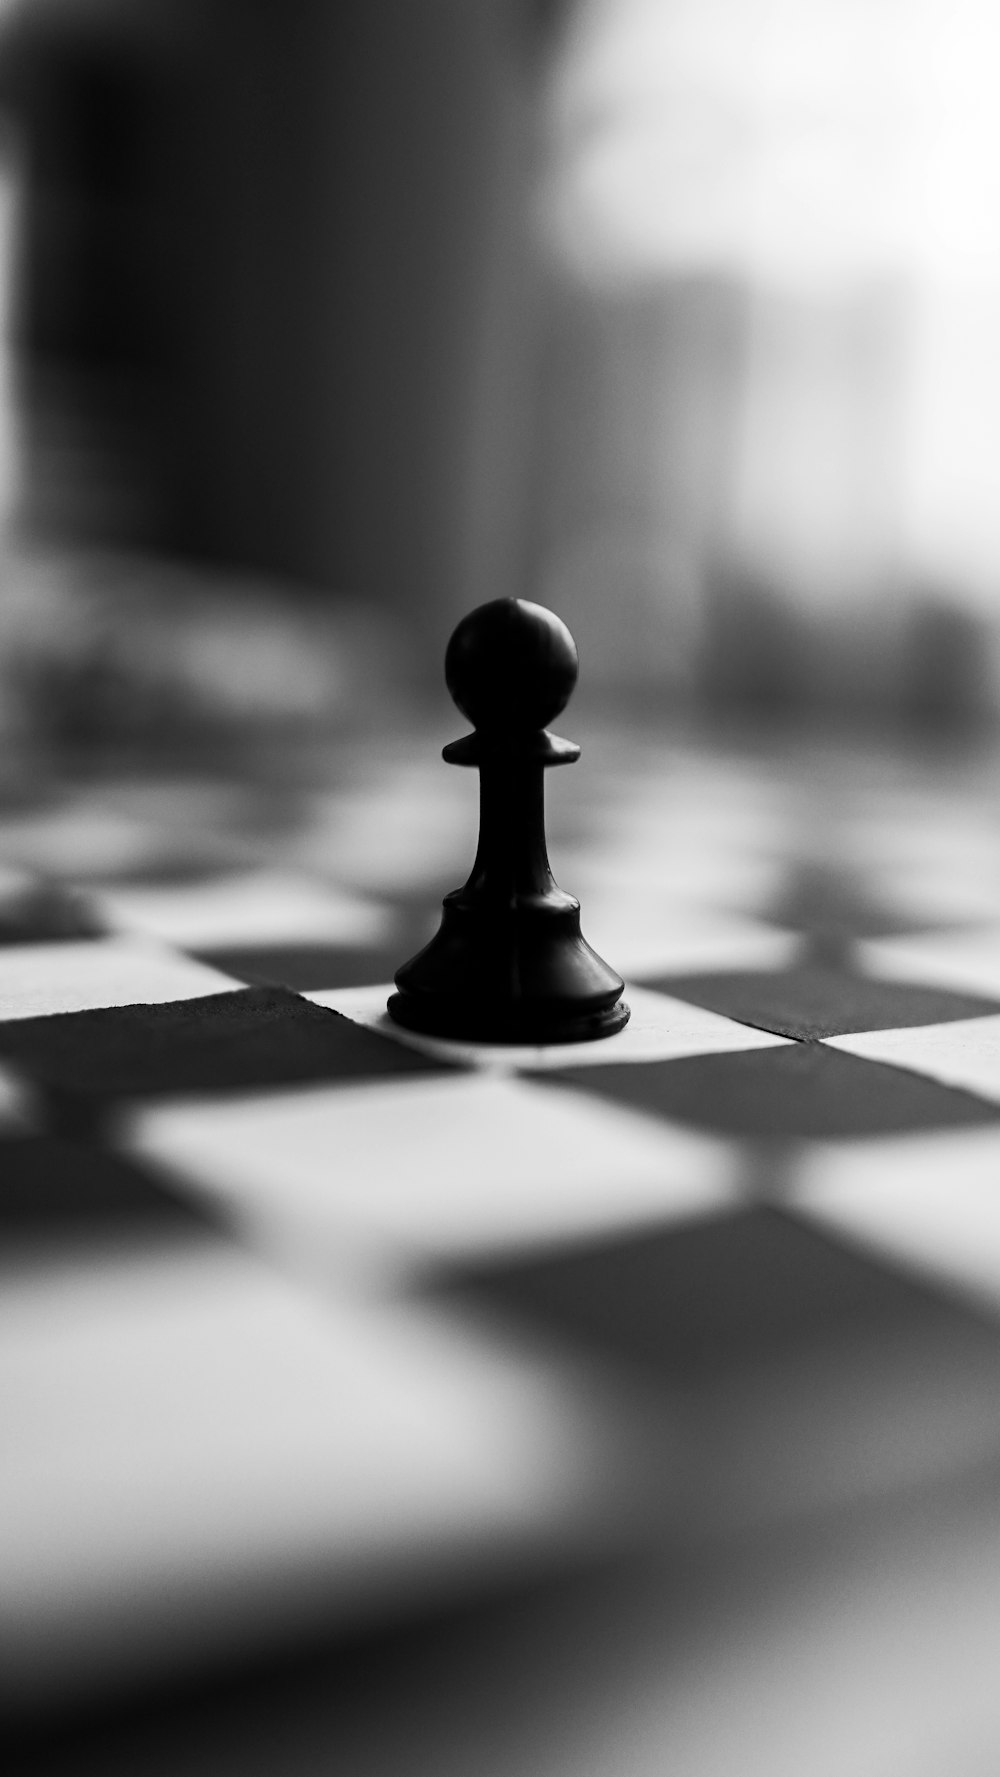 Pieza de ajedrez negra sobre tela de cuadros blancos y negros